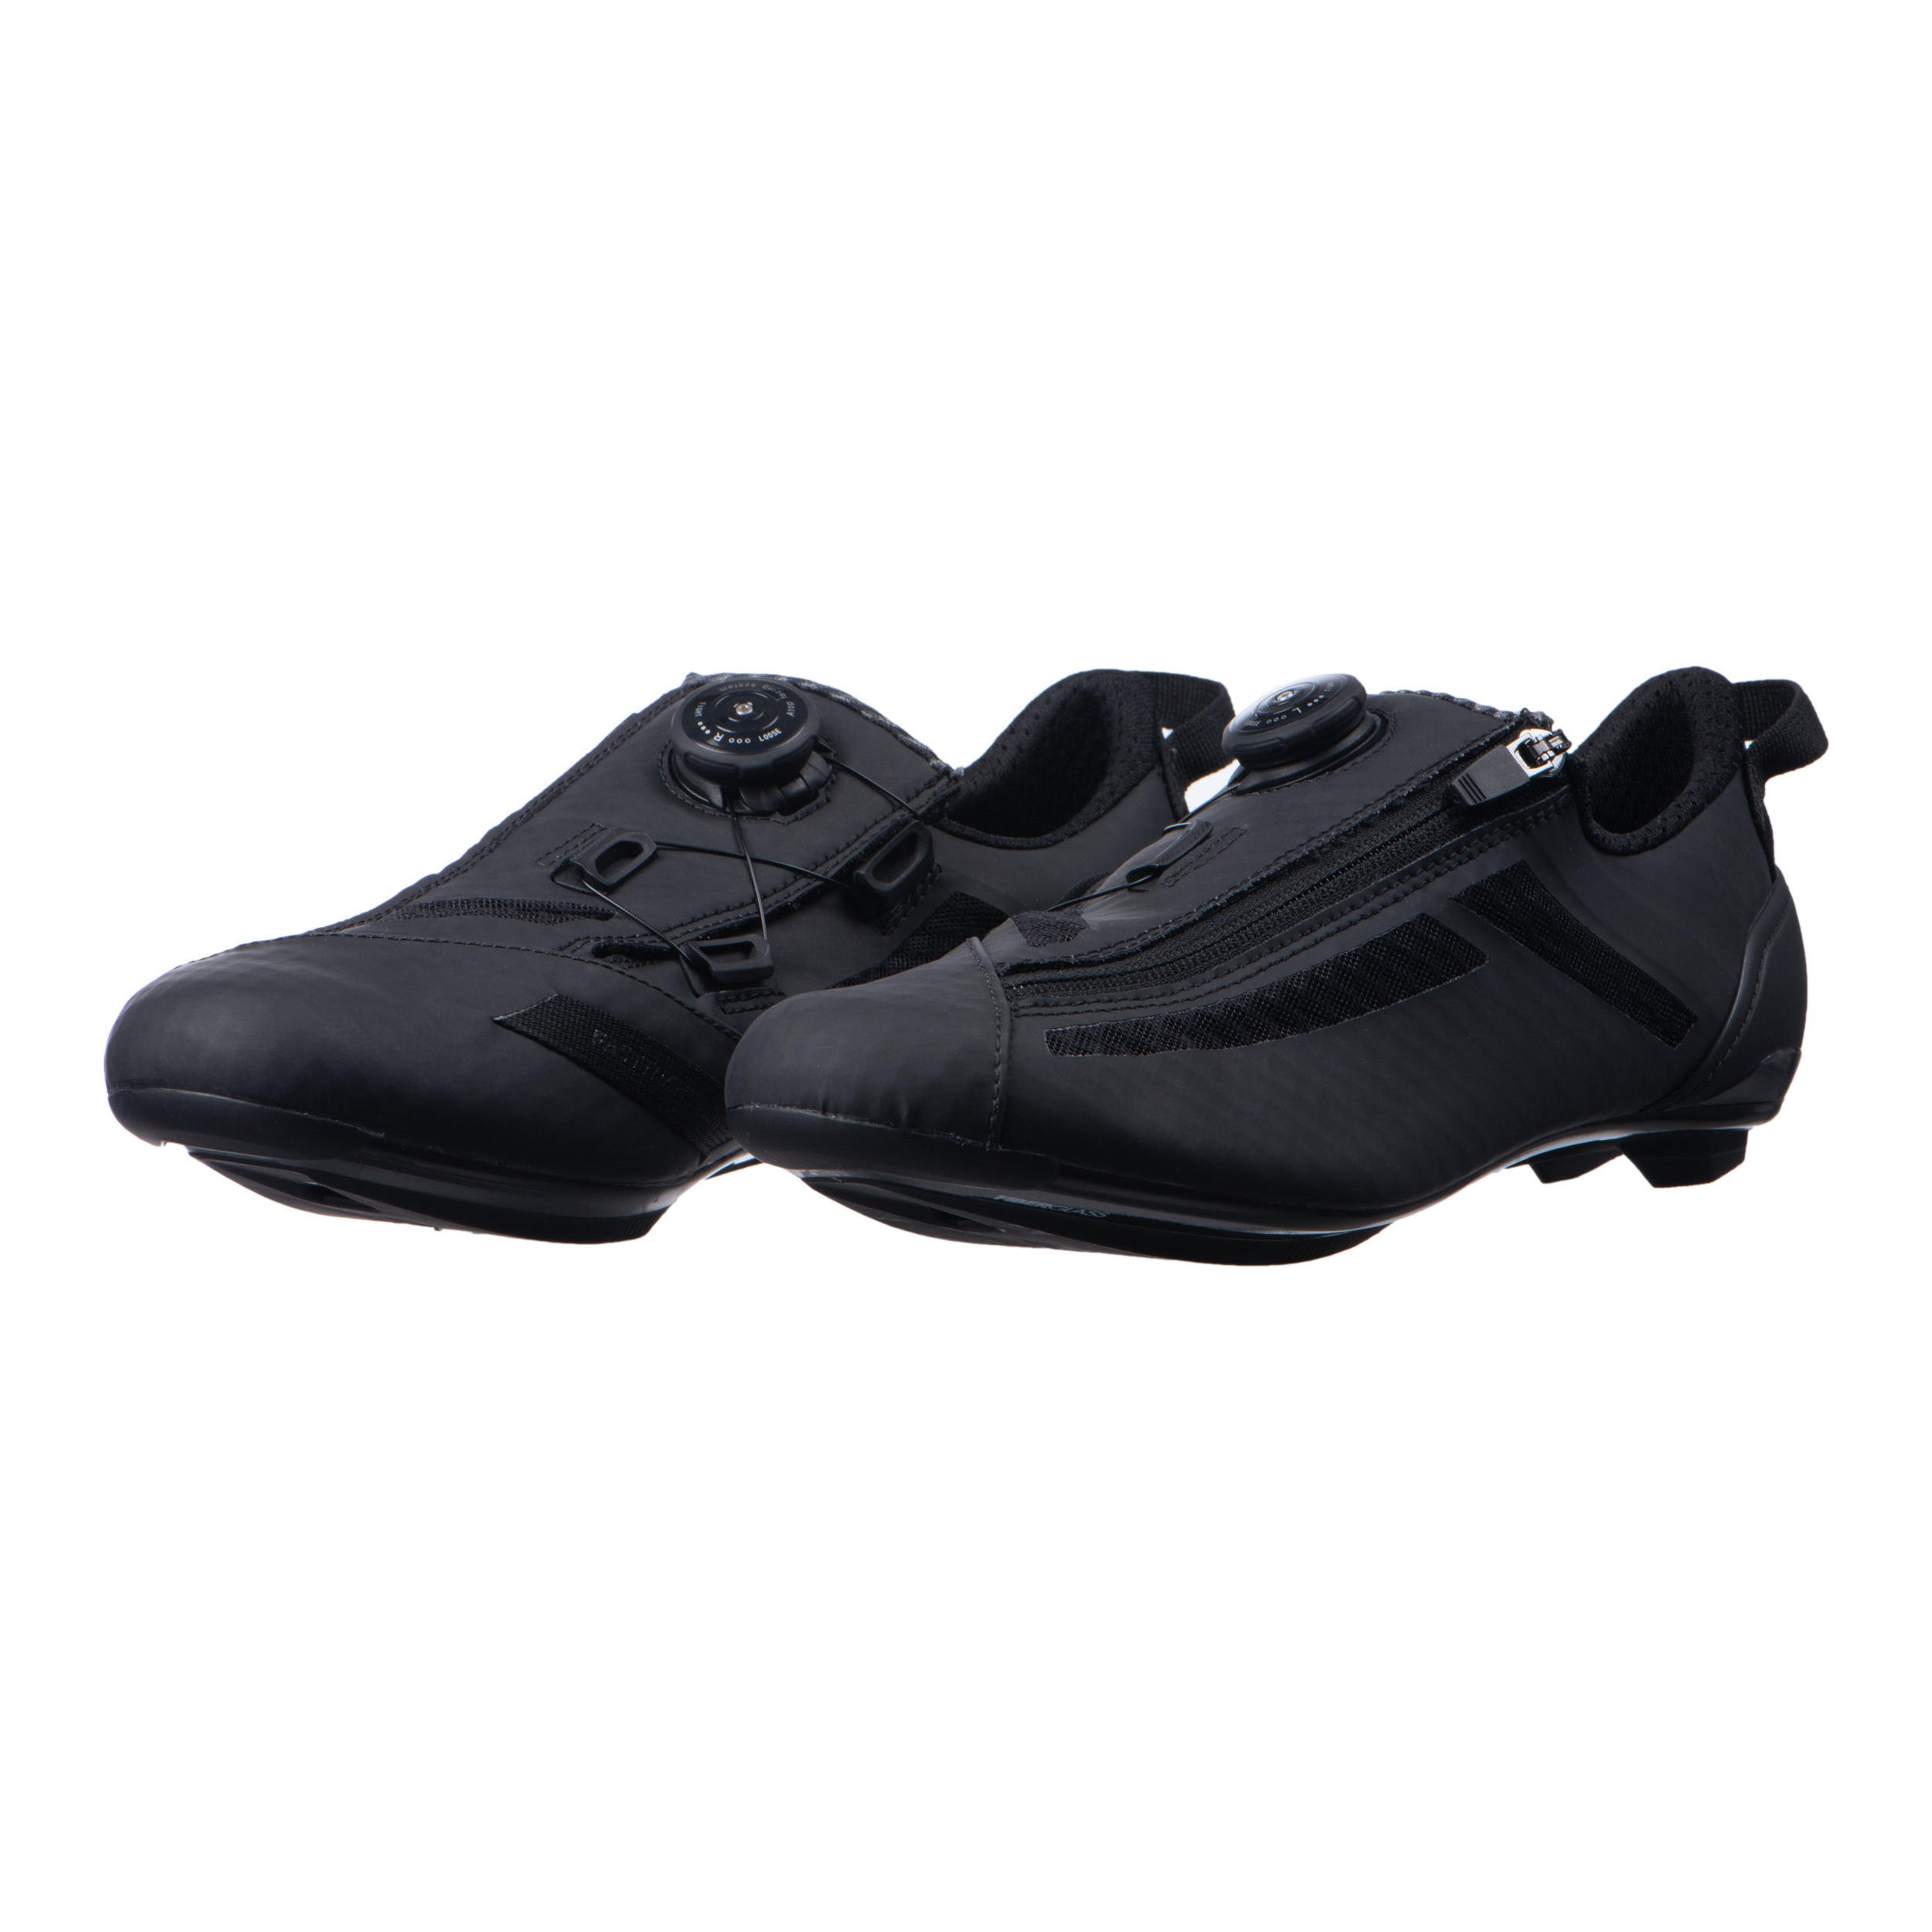 Aptonia Triathlon Cycling Shoes - Black 2/7